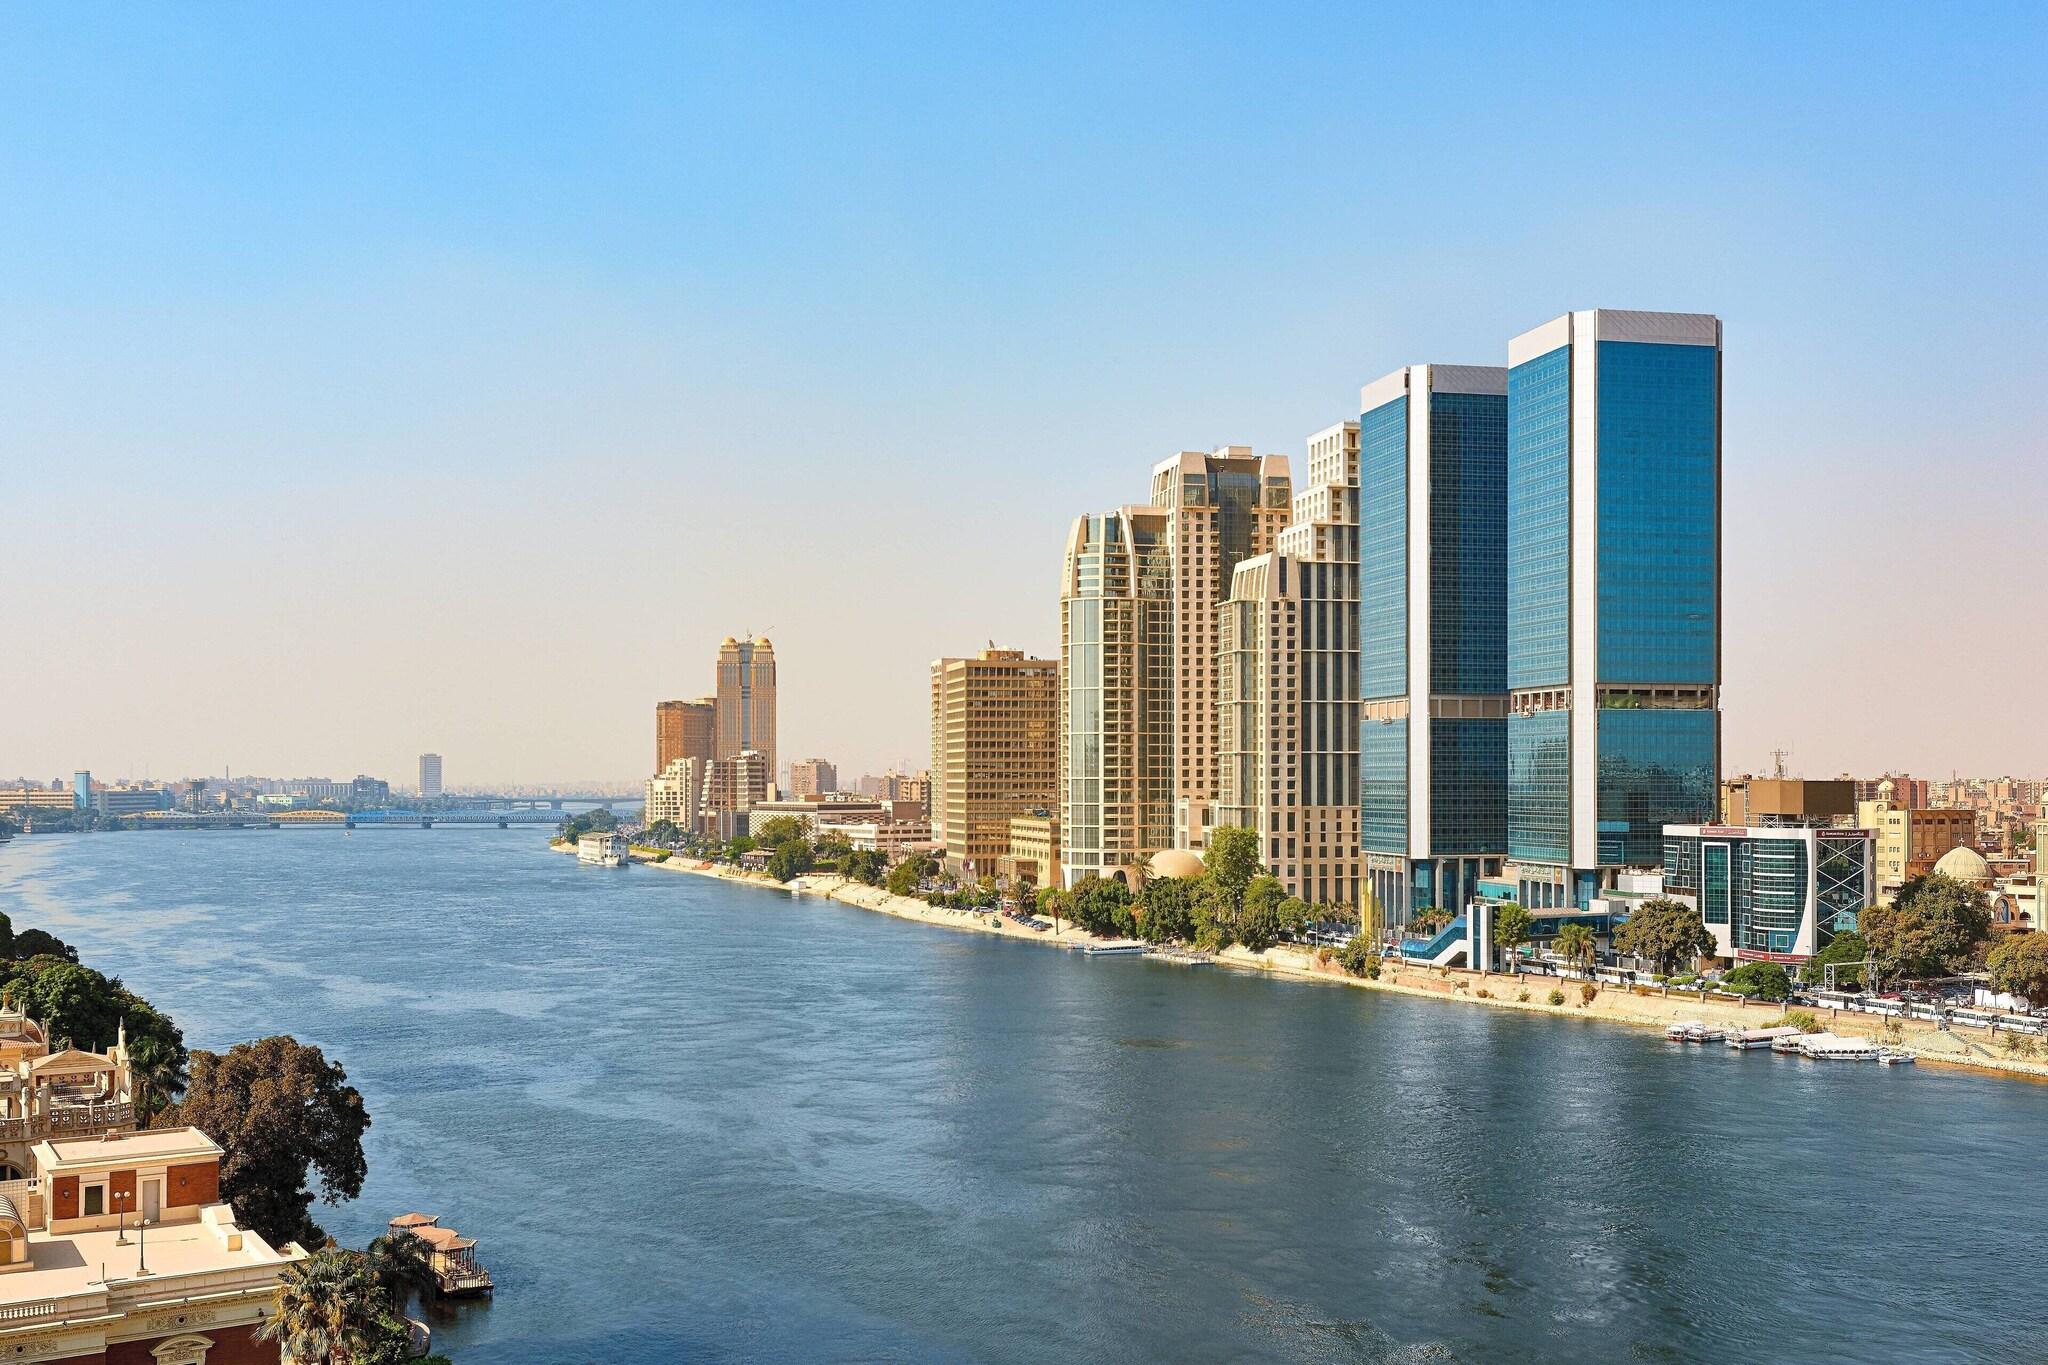 Cairo Marriott Hotel & Omar Khayyam Casino image